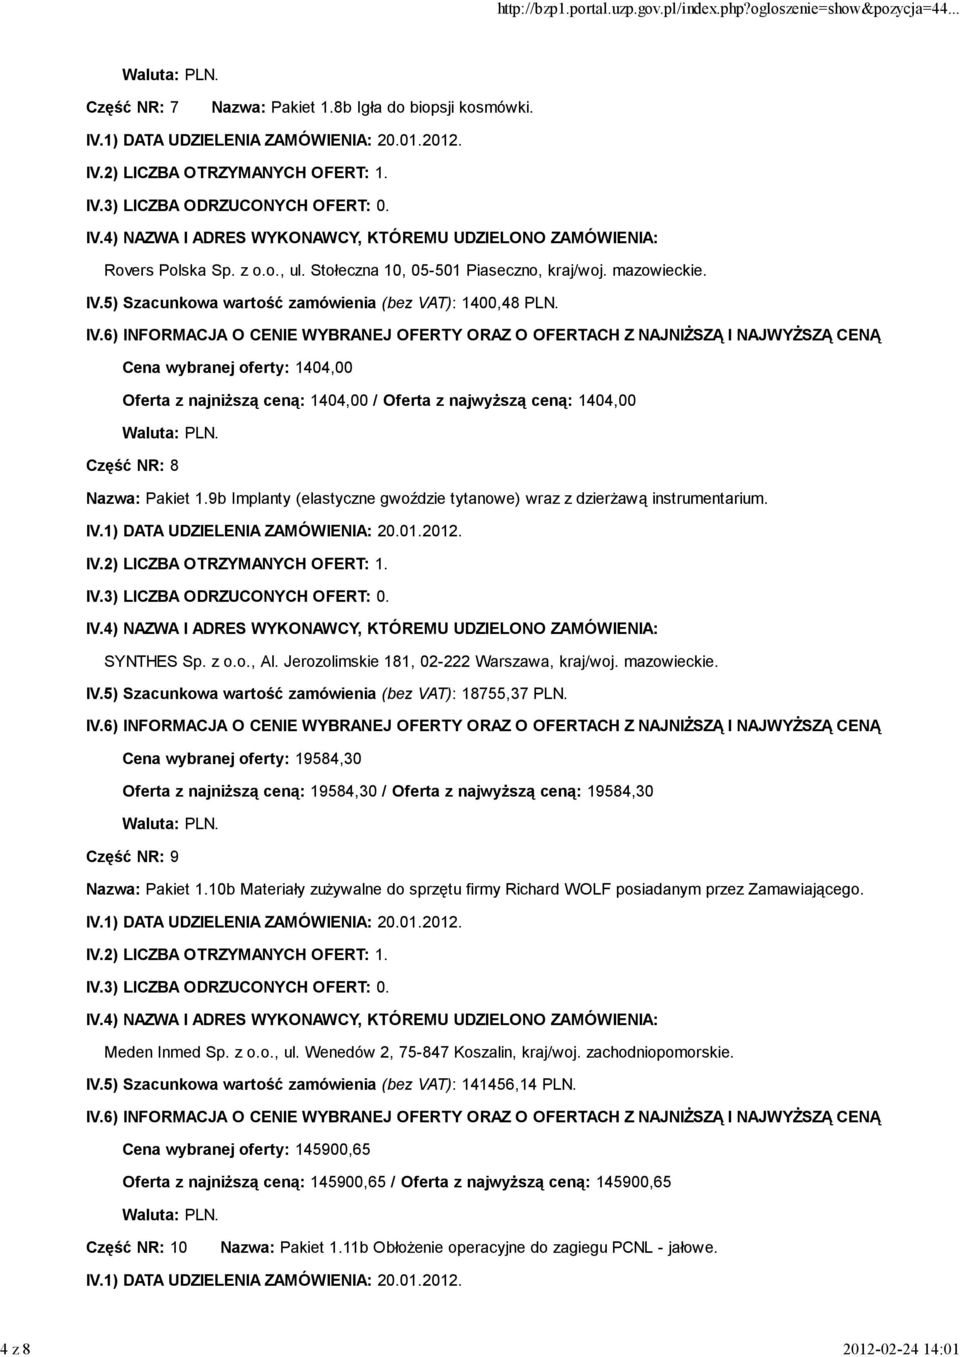 9b Implanty (elastyczne gwoździe tytanowe) wraz z dzierŝawą instrumentarium. SYNTHES Sp. z o.o., Al. Jerozolimskie 181, 02-222 Warszawa, kraj/woj. mazowieckie. IV.